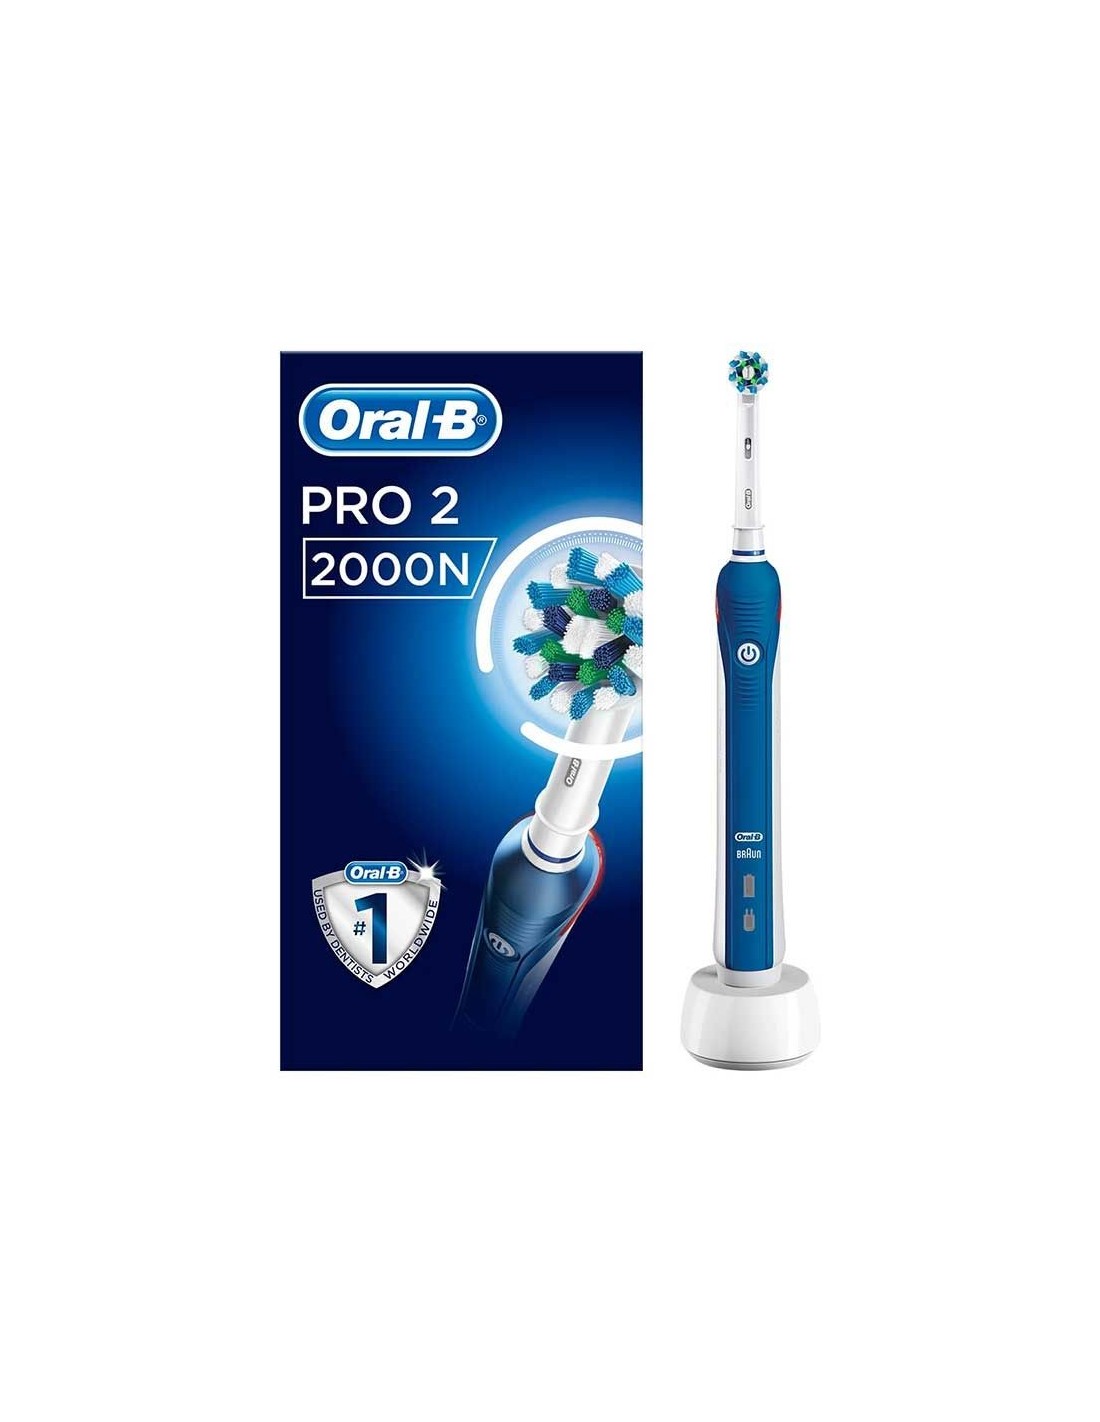 ORAL-B Cepillo Dental Eléctrico Recargable 2 Uds Pack Ahorro Duplo